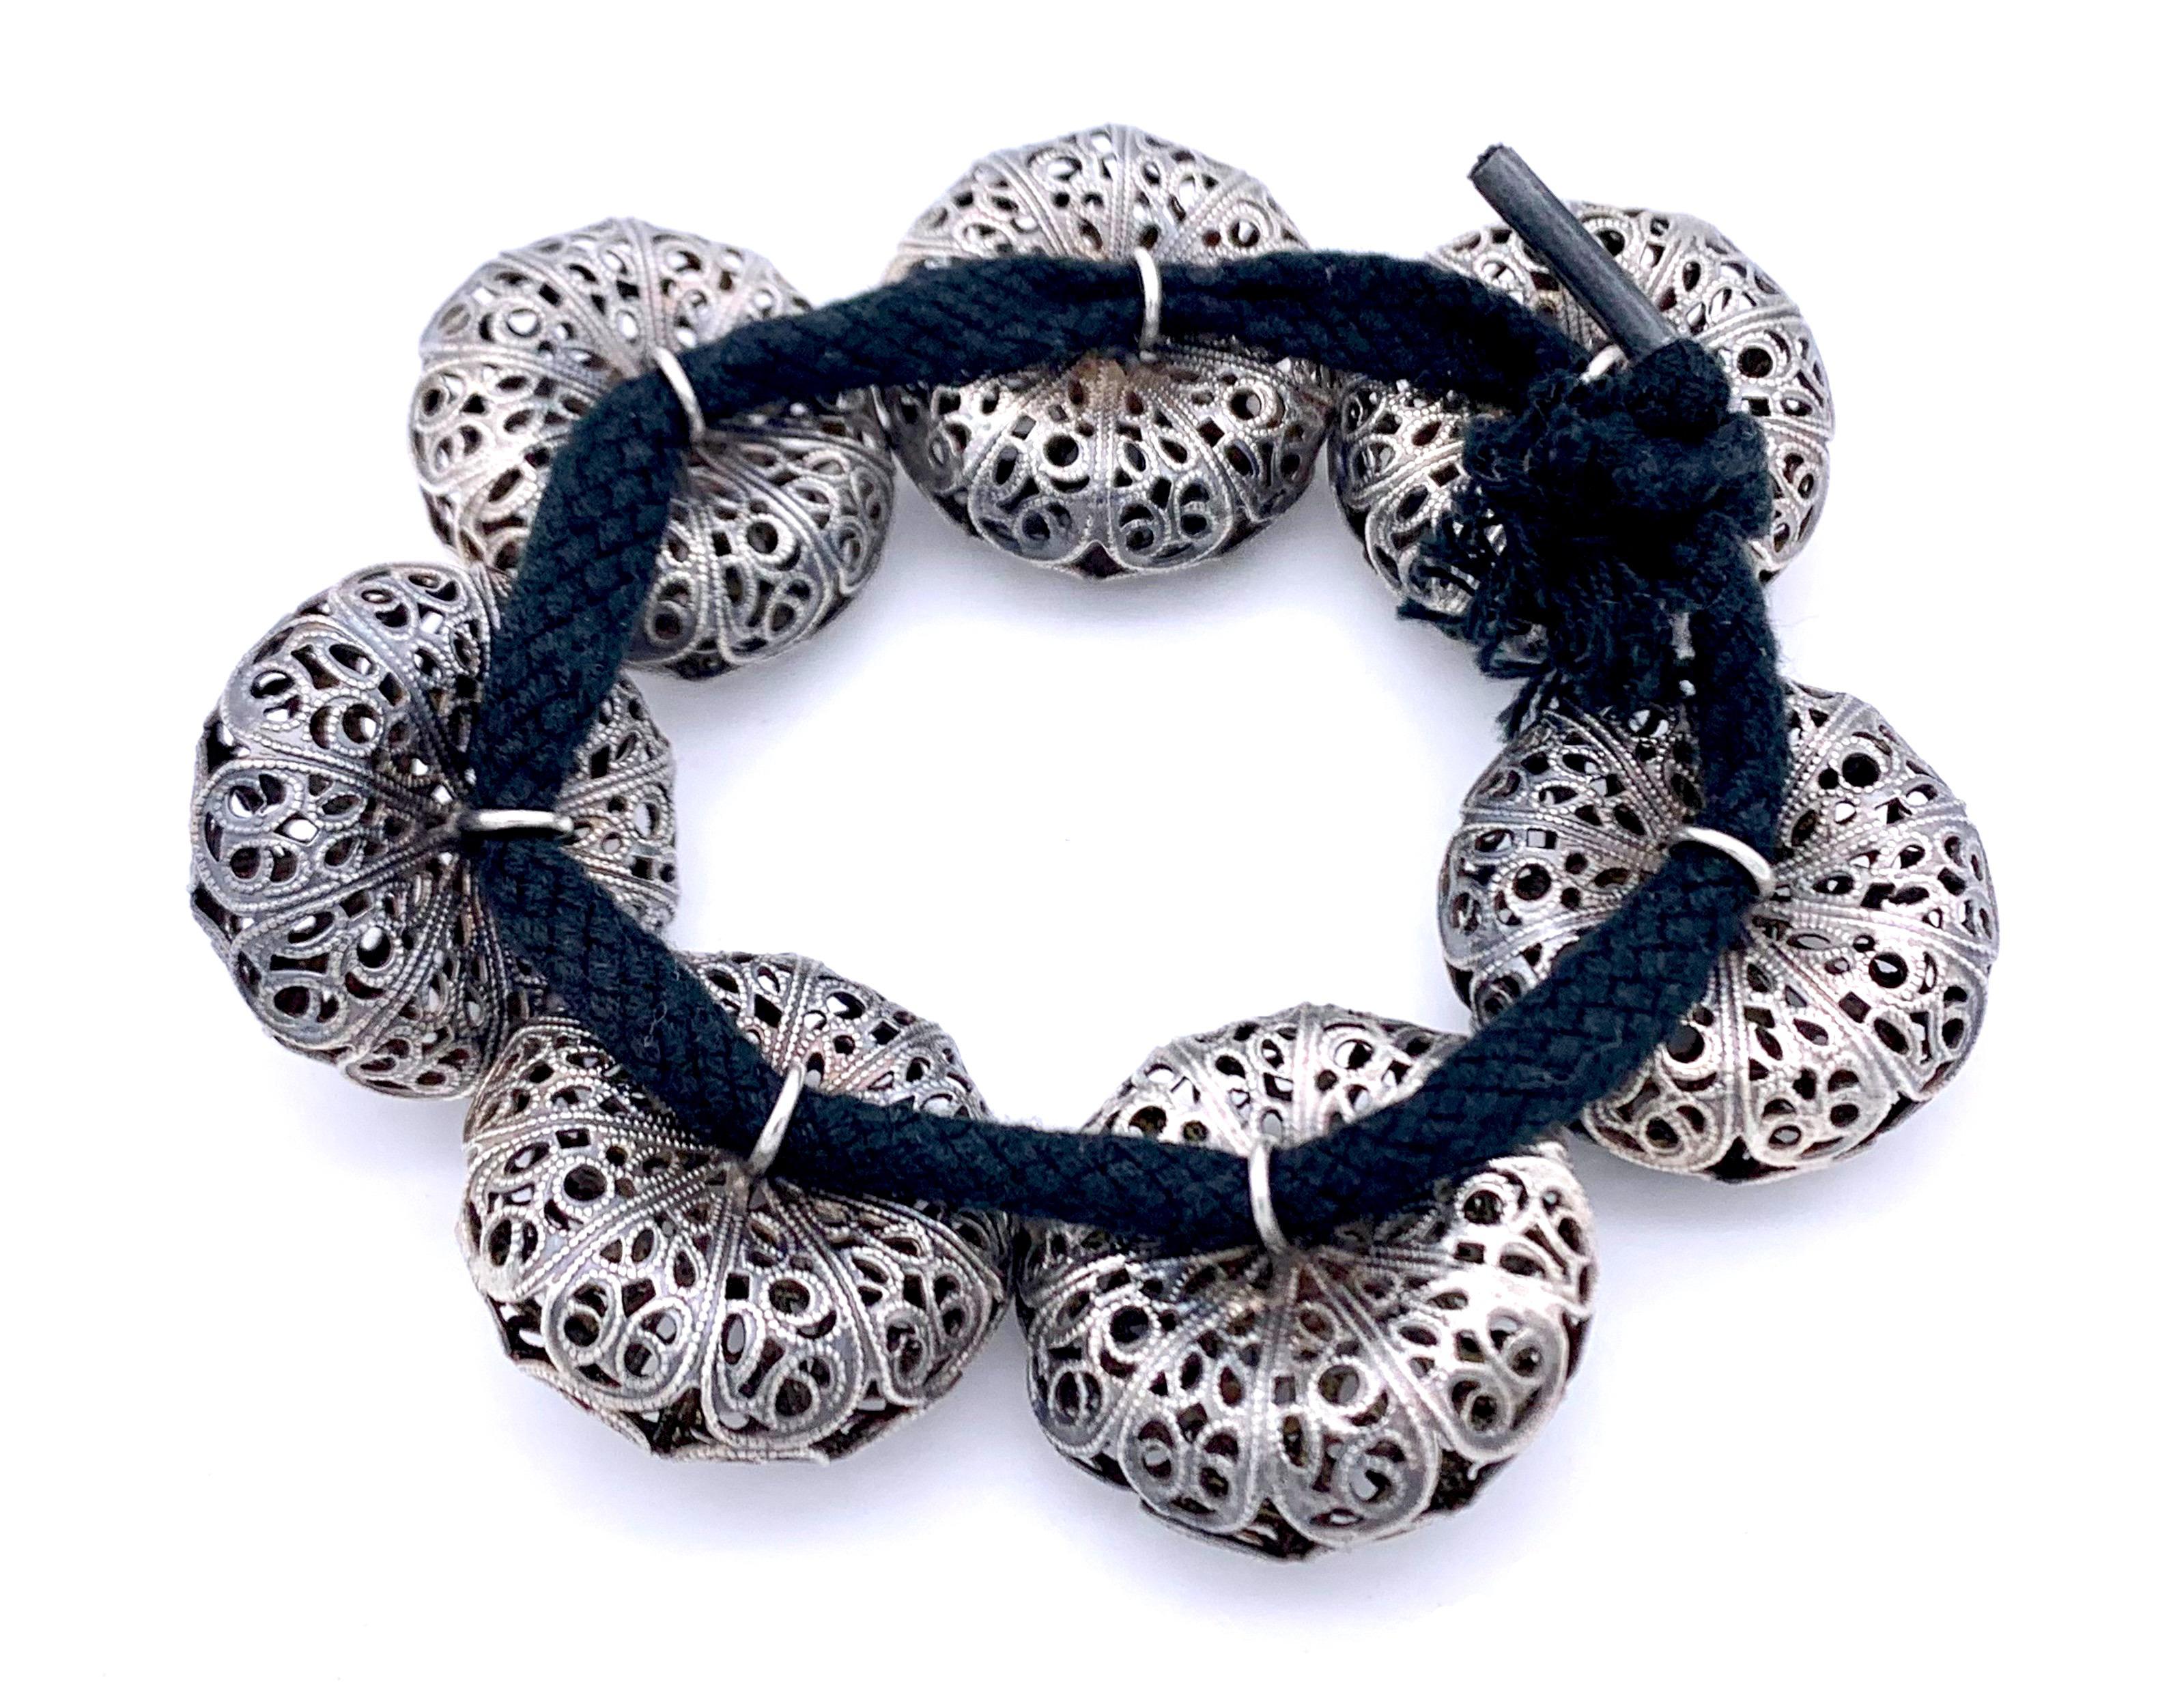 Ces merveilleux boutons en argent sont enfilés sur un  de la ficelle de coton noir pour constituer un bracelet.
Les boutons ont été fabriqués à la main dans le deuxième quart du XIXe siècle. Le travail en fil d'argent fin est décoré de fleurs en